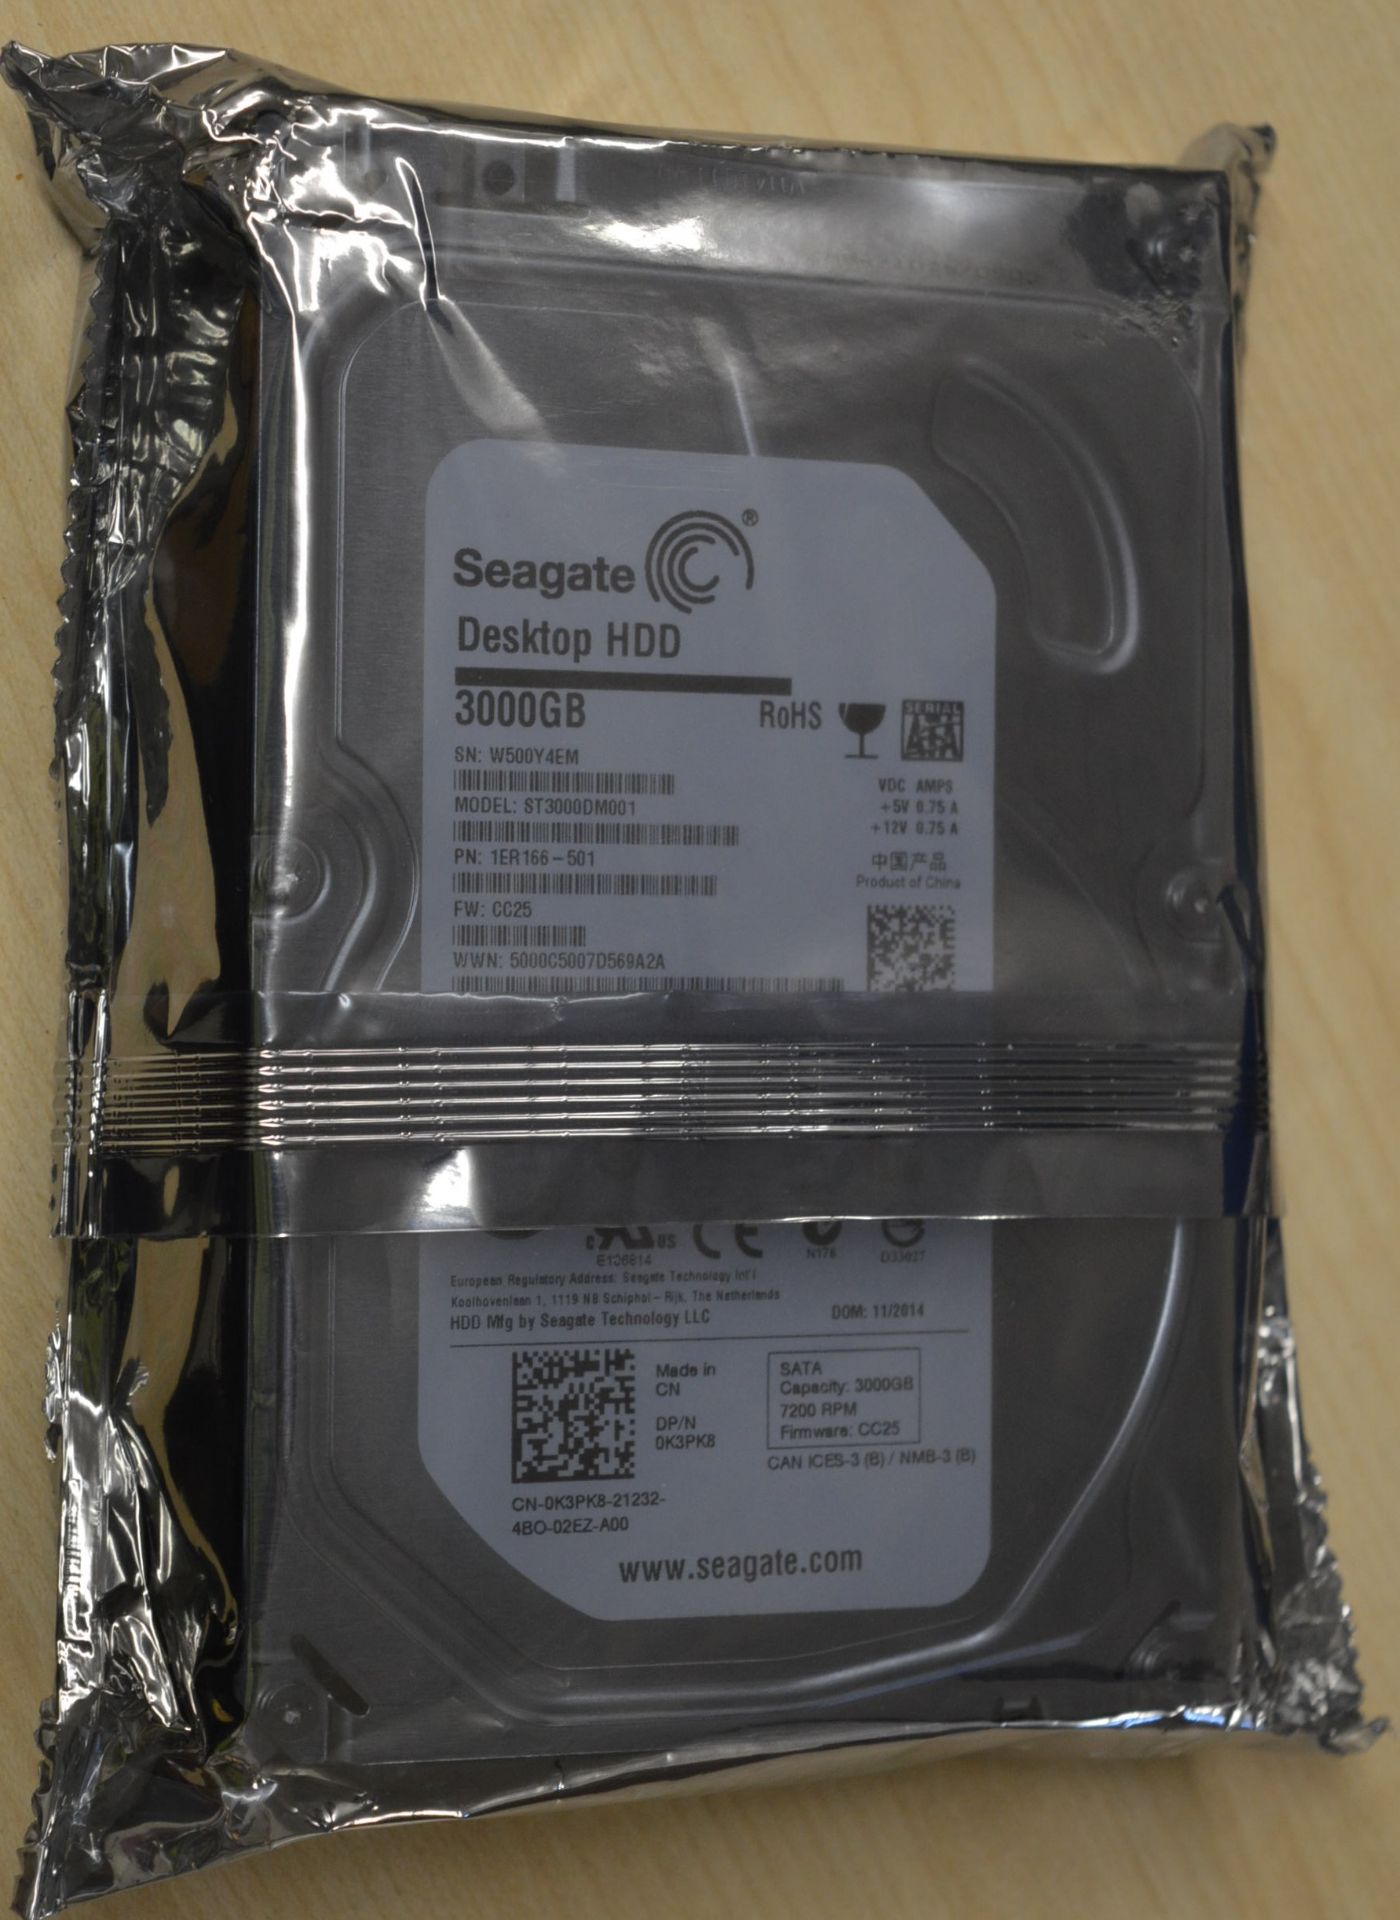 1 Seagate 3TB 3.5 Inch Desktop Hard Drive - 64mb Cache, 7200rpm, SATA-III -  Sealed in Original Anti